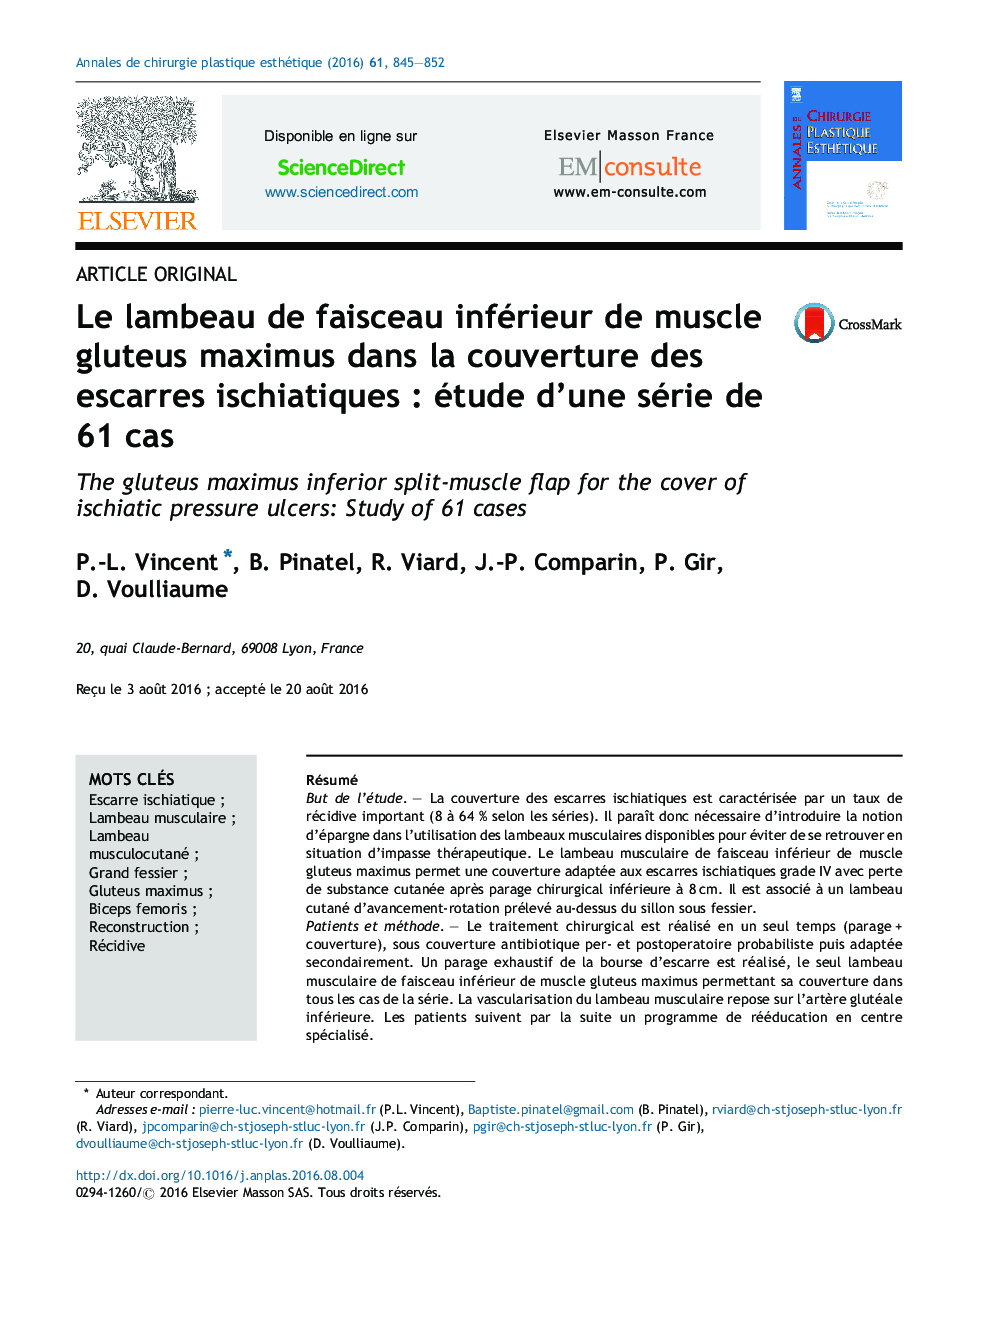 Le lambeau de faisceau inférieur de muscle gluteus maximus dans la couverture des escarres ischiatiquesÂ : étude d'une série de 61Â cas